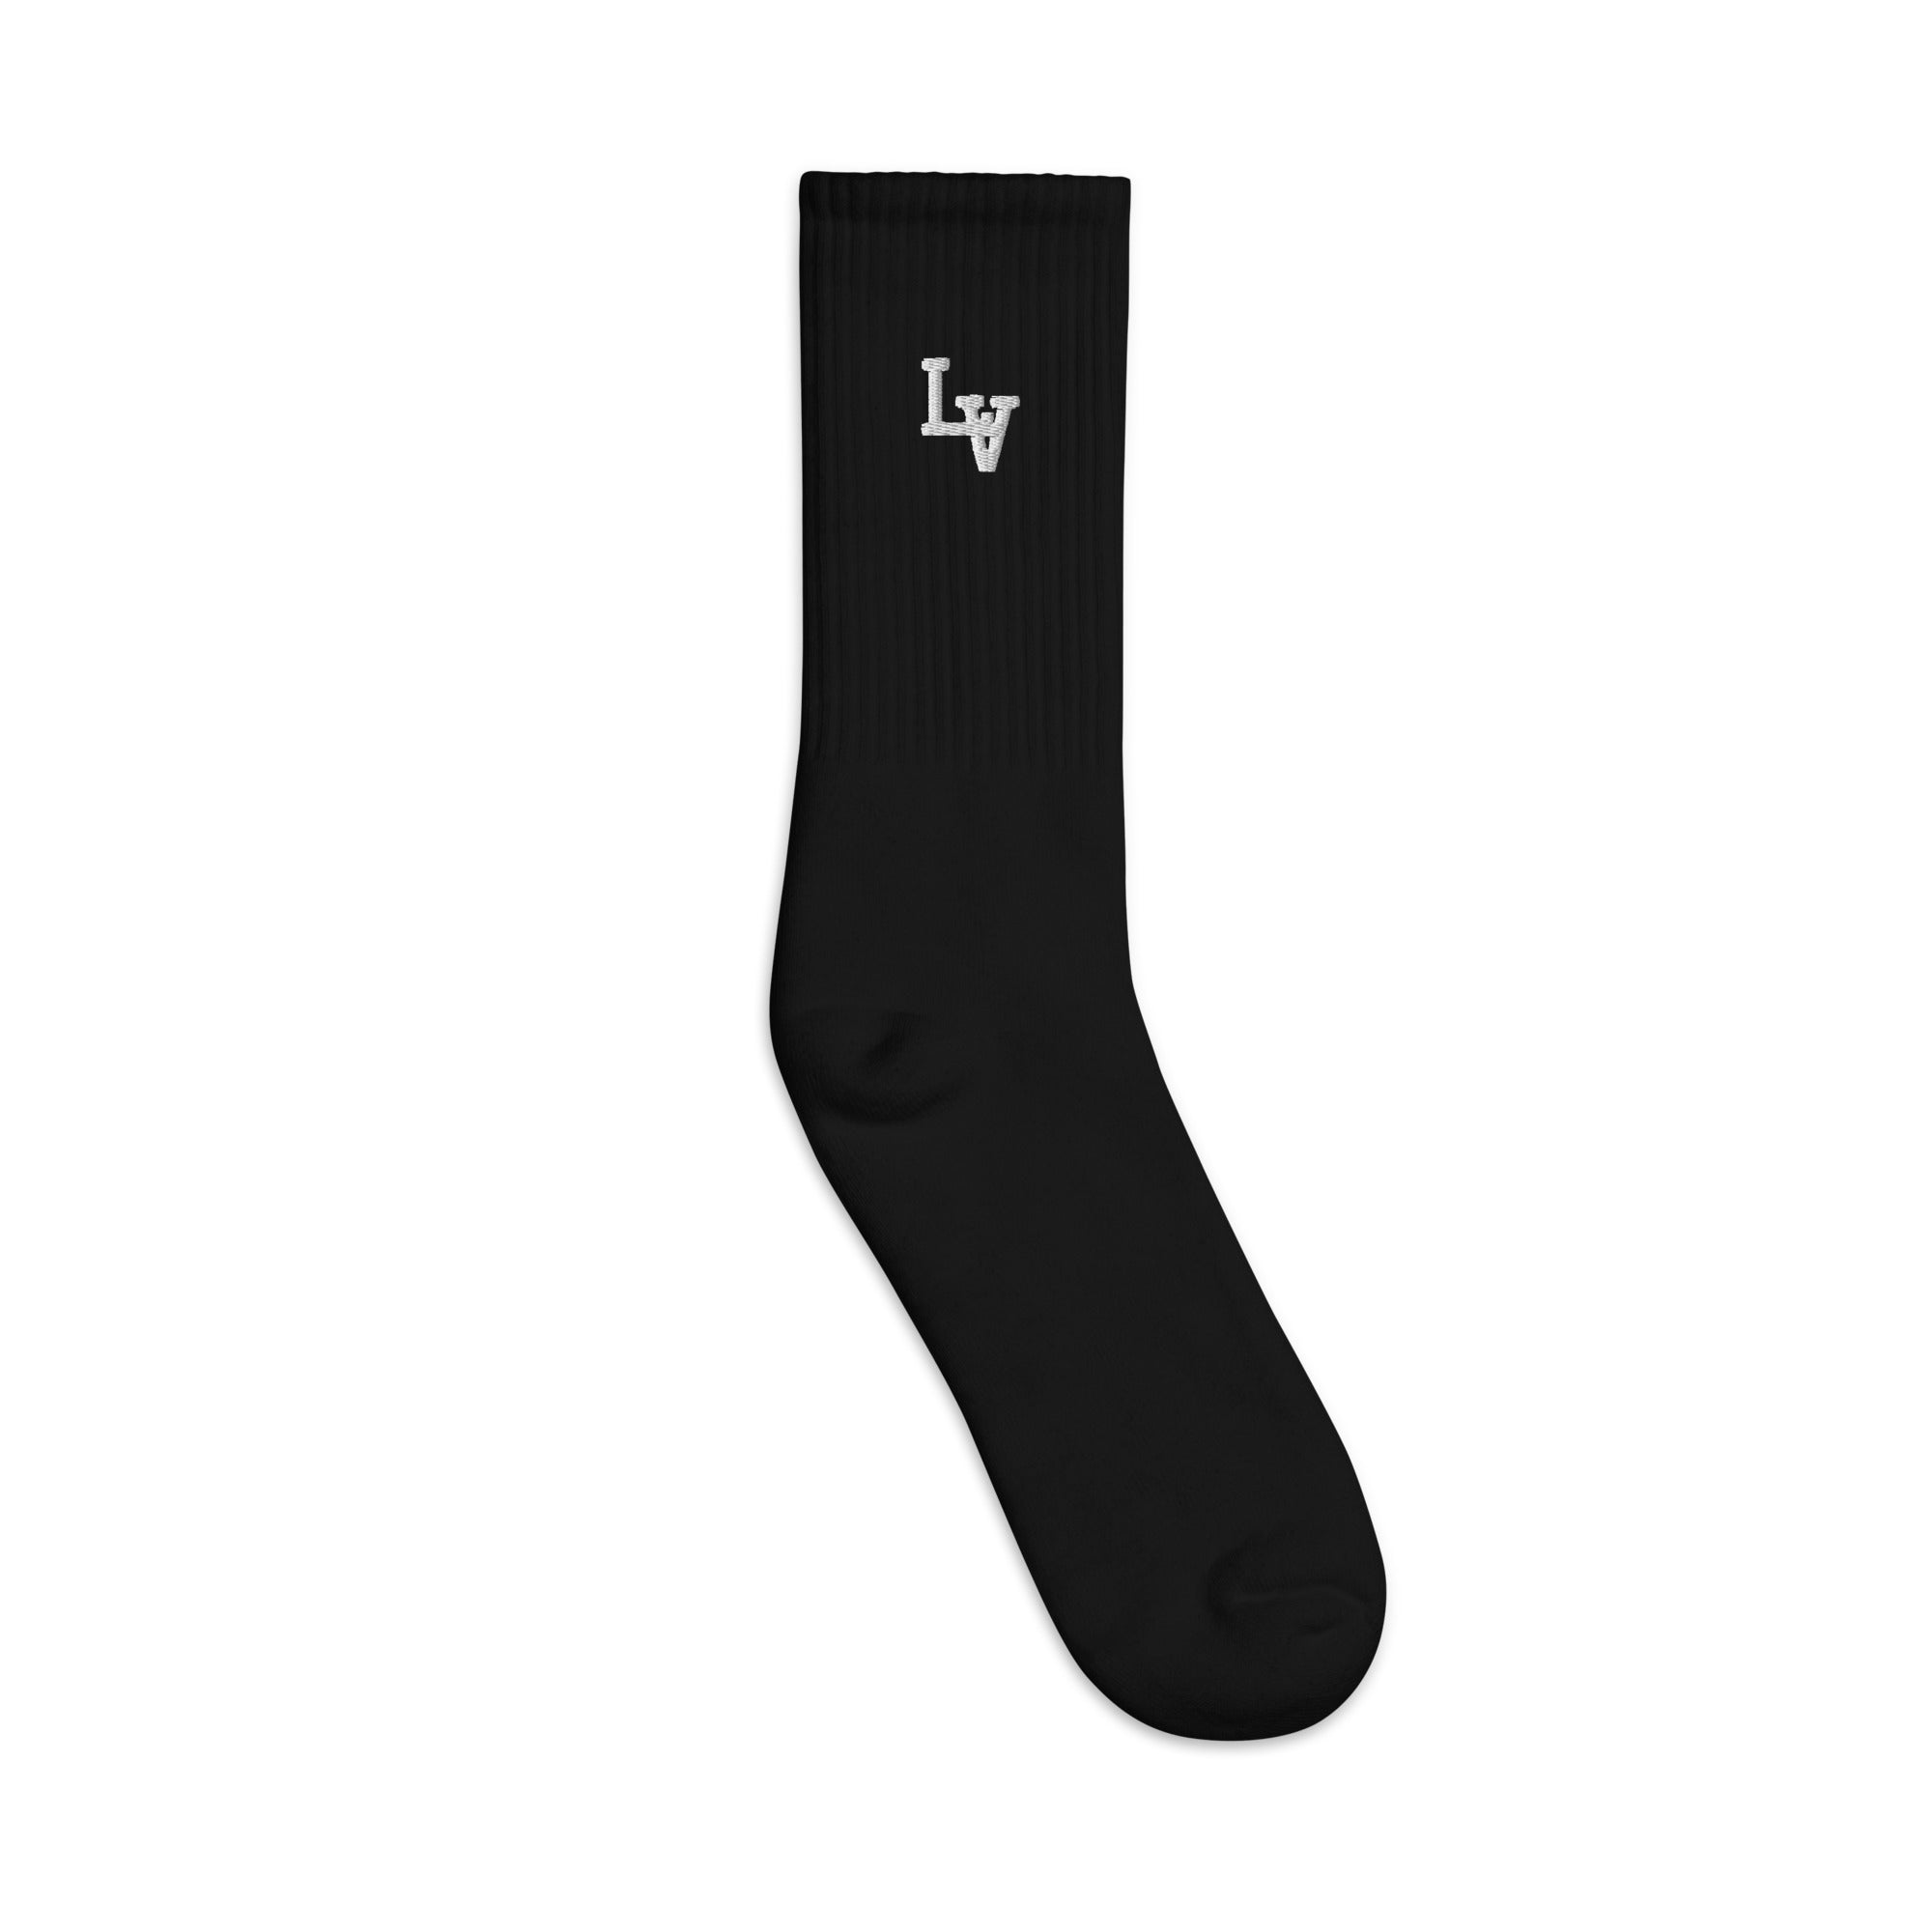 lv socks black